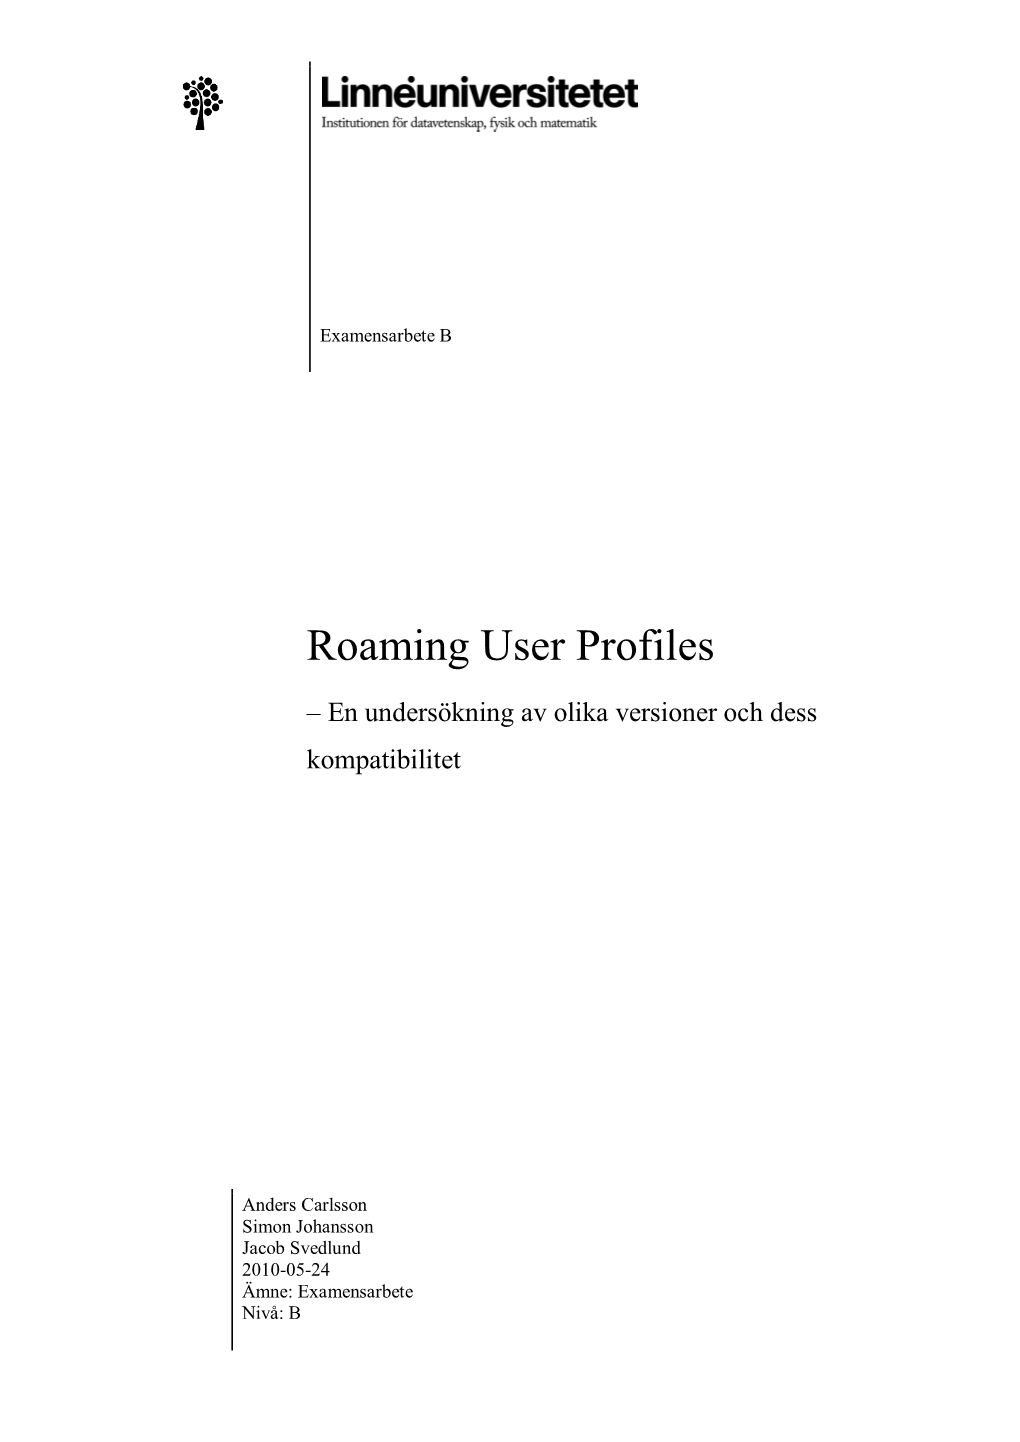 Roaming User Profiles